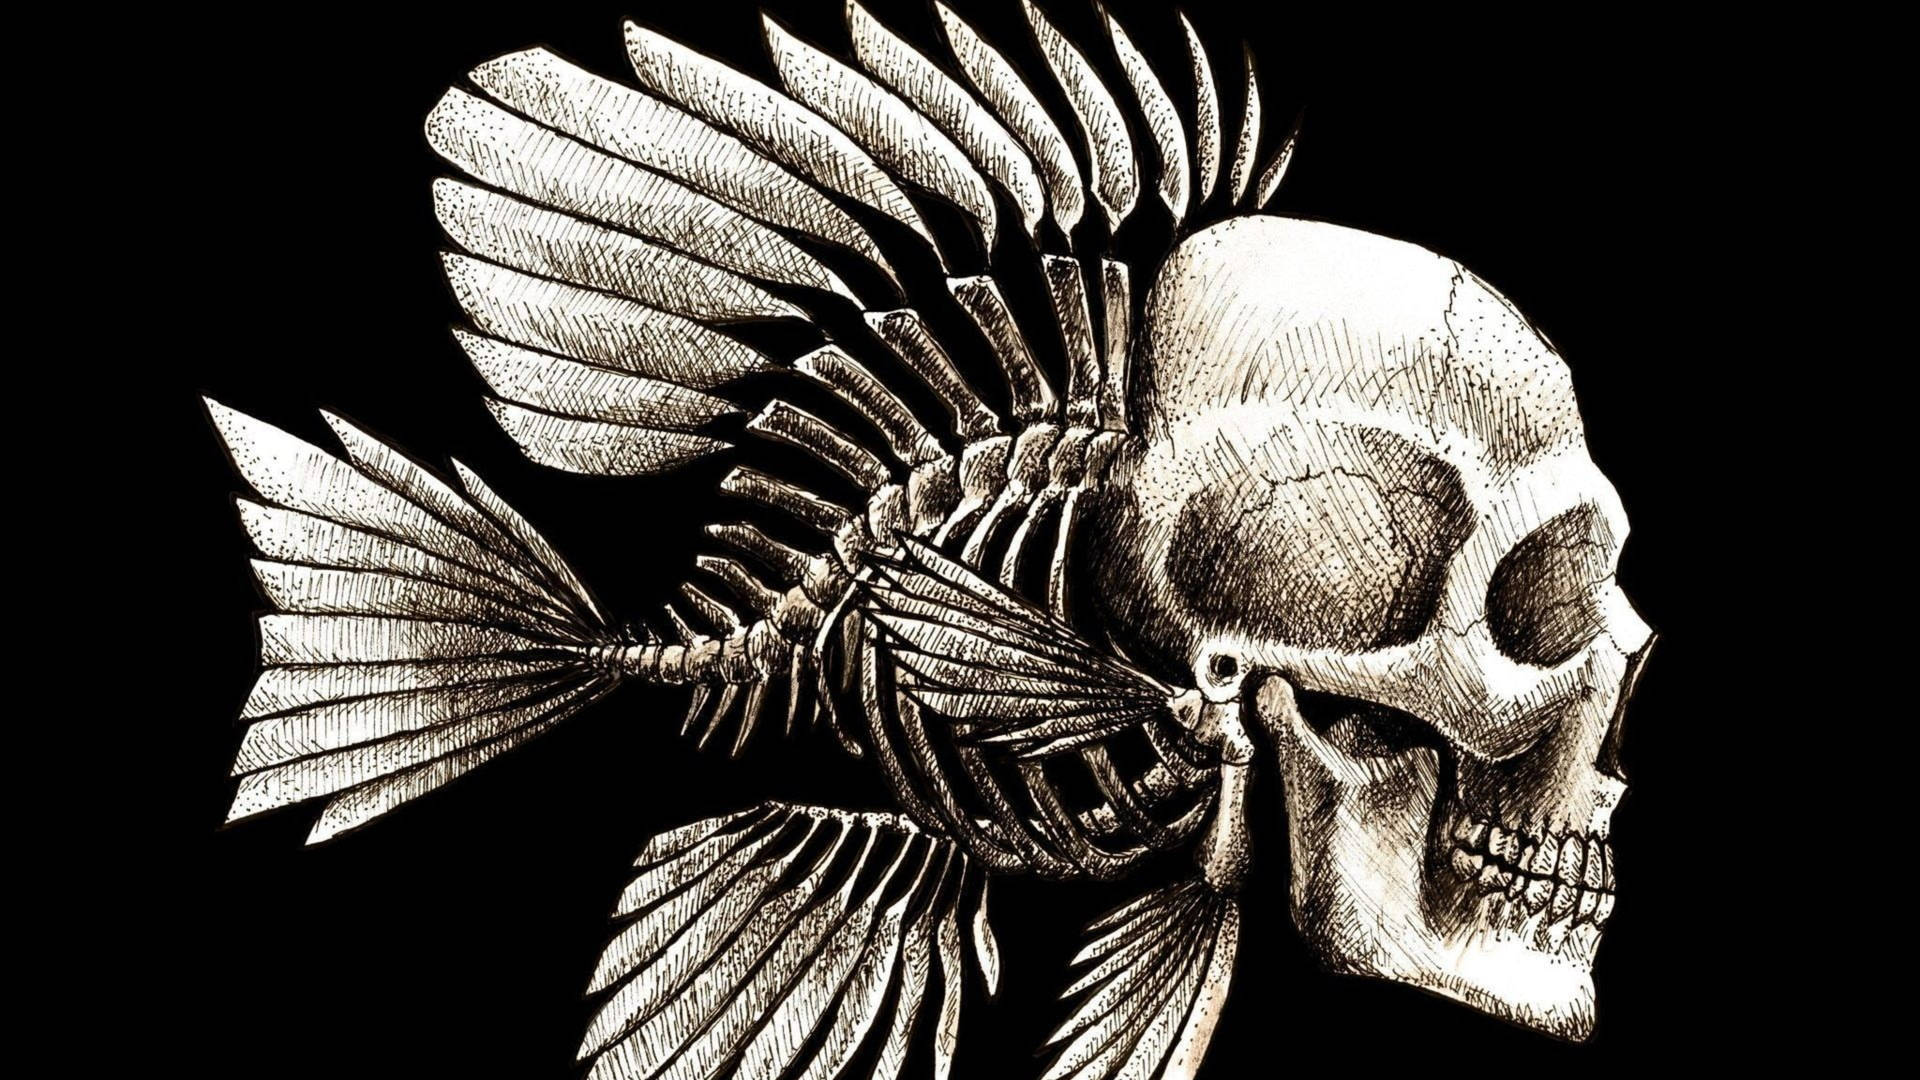 Fish Skull Dark Abstract